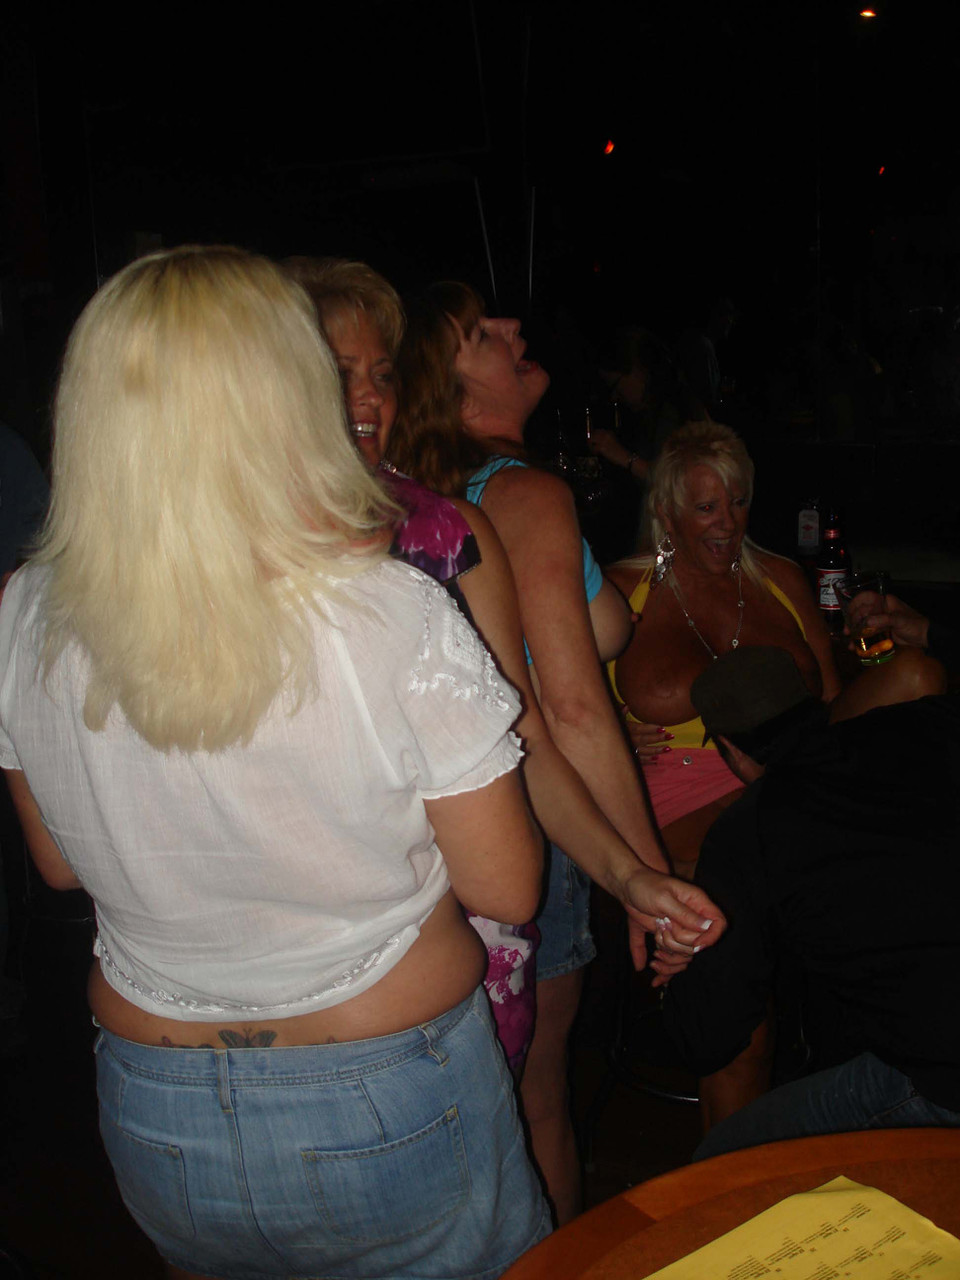 Real Tampa Swingers Dee Delmar, Double Dee, Mandi Mcgraw, Tracy Lick foto porno #424445794 | Real Tampa Swingers Pics, Dee Delmar, Double Dee, Mandi Mcgraw, Tracy Lick, Party, porno mobile